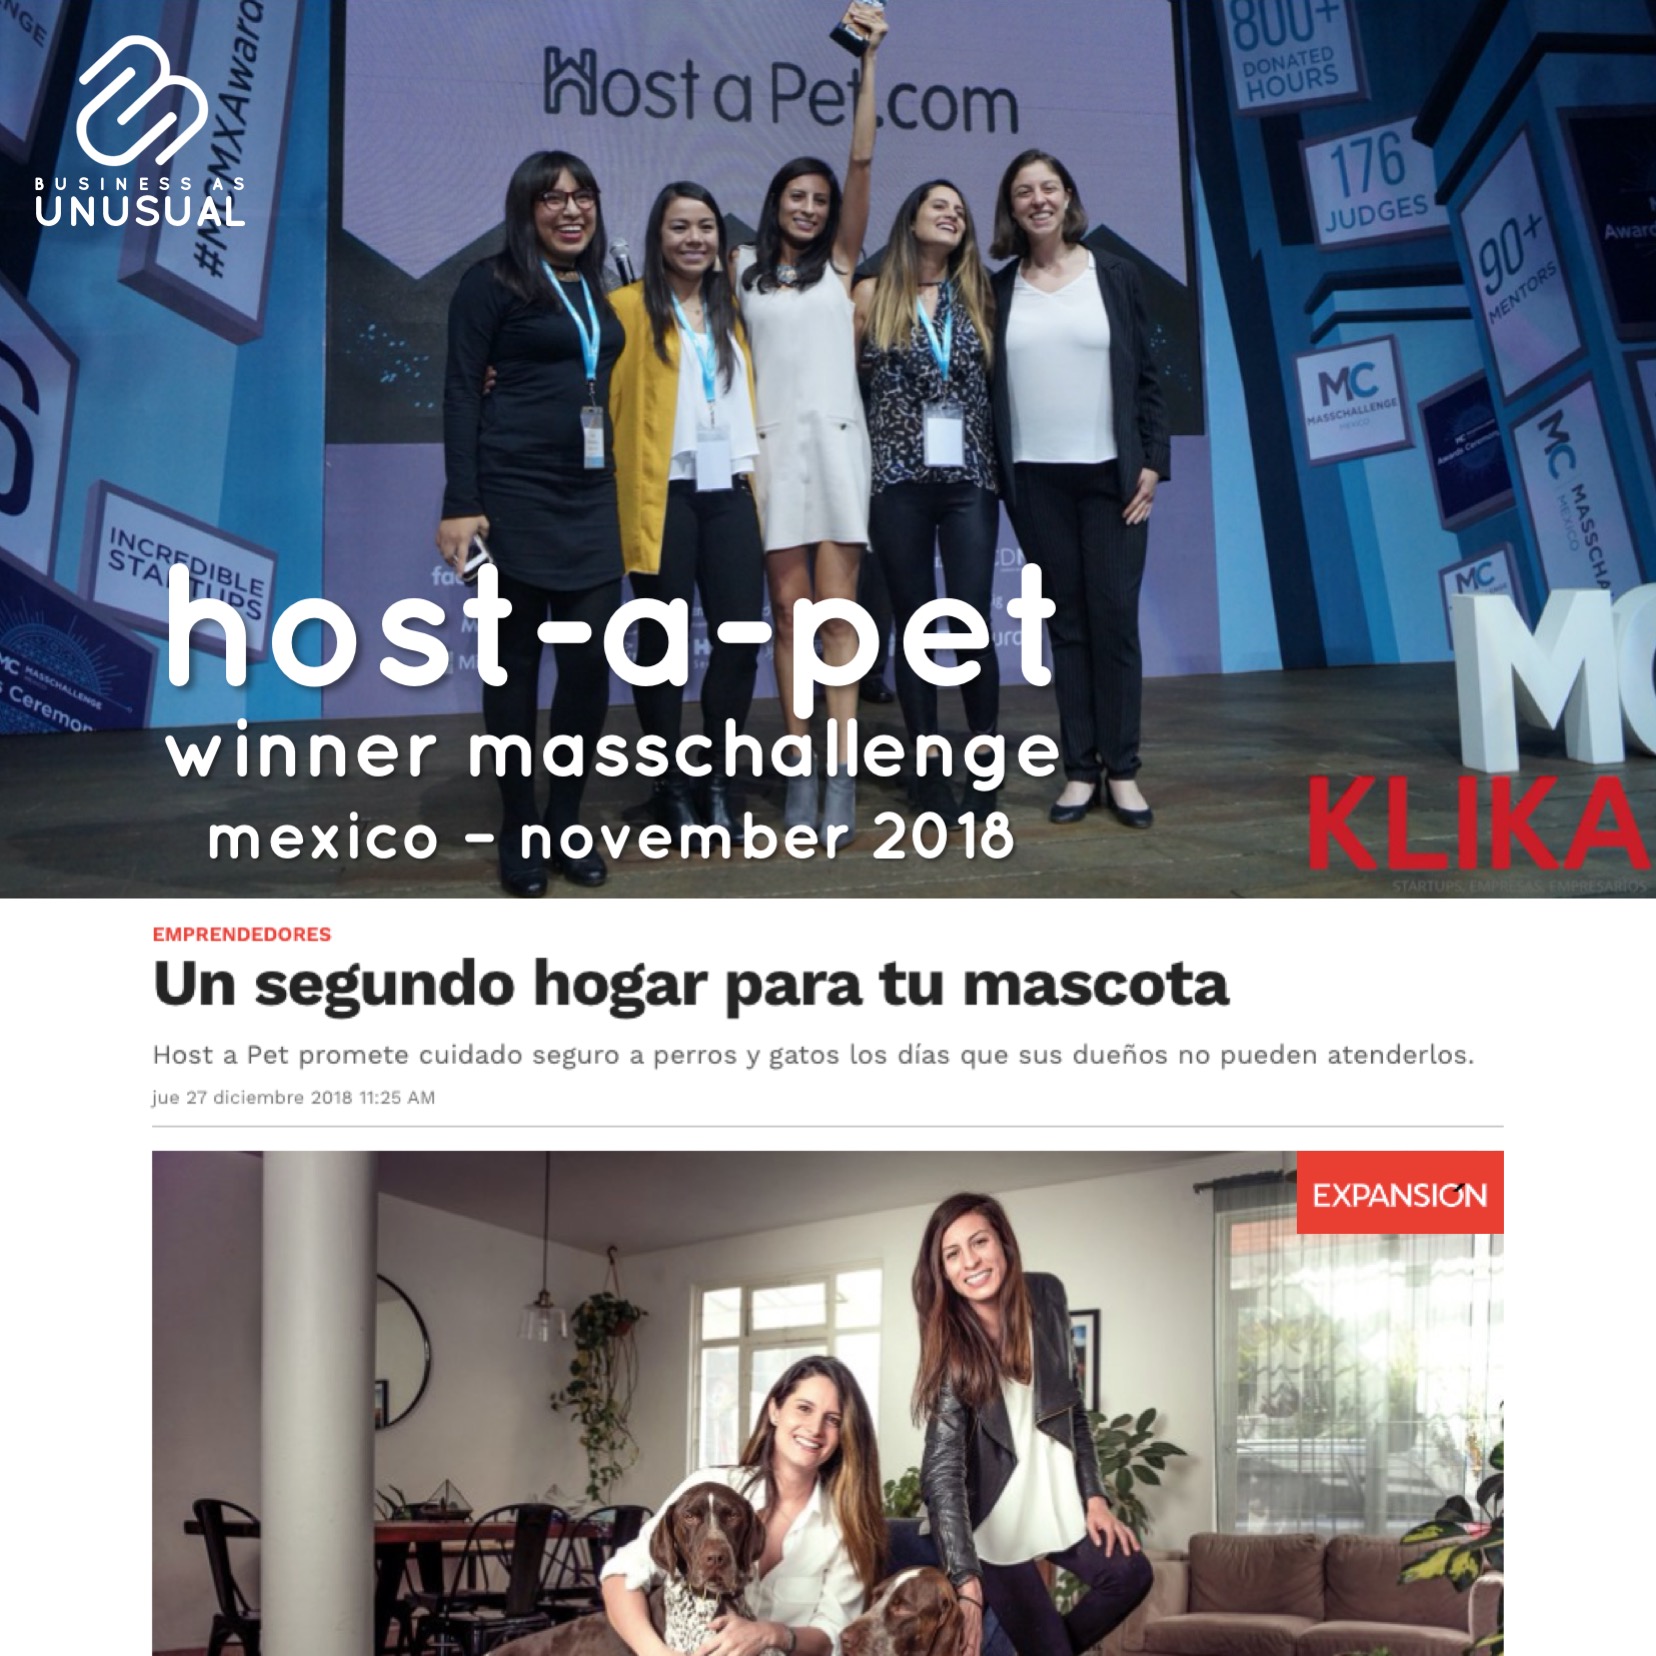 Host-a-Pet - Winner Masschallenge - Mexico November 2018